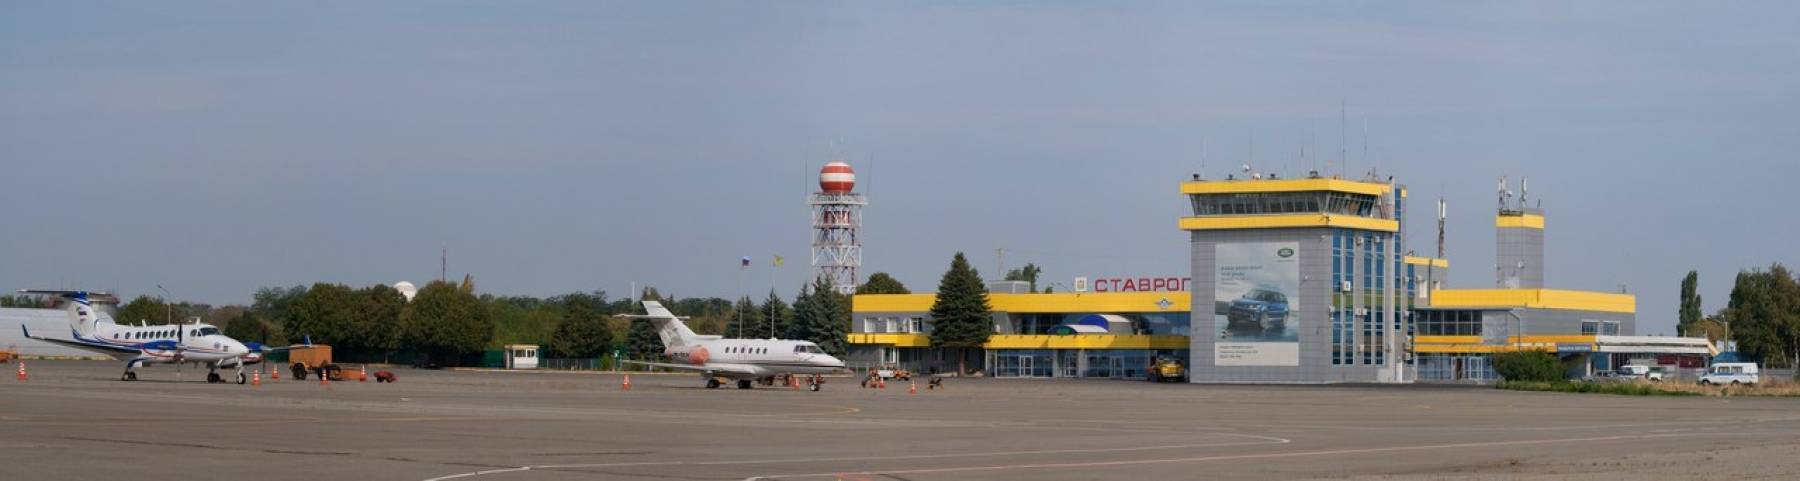 Об аэропорте ставрополя stw urmt - официальный сайт, контакты